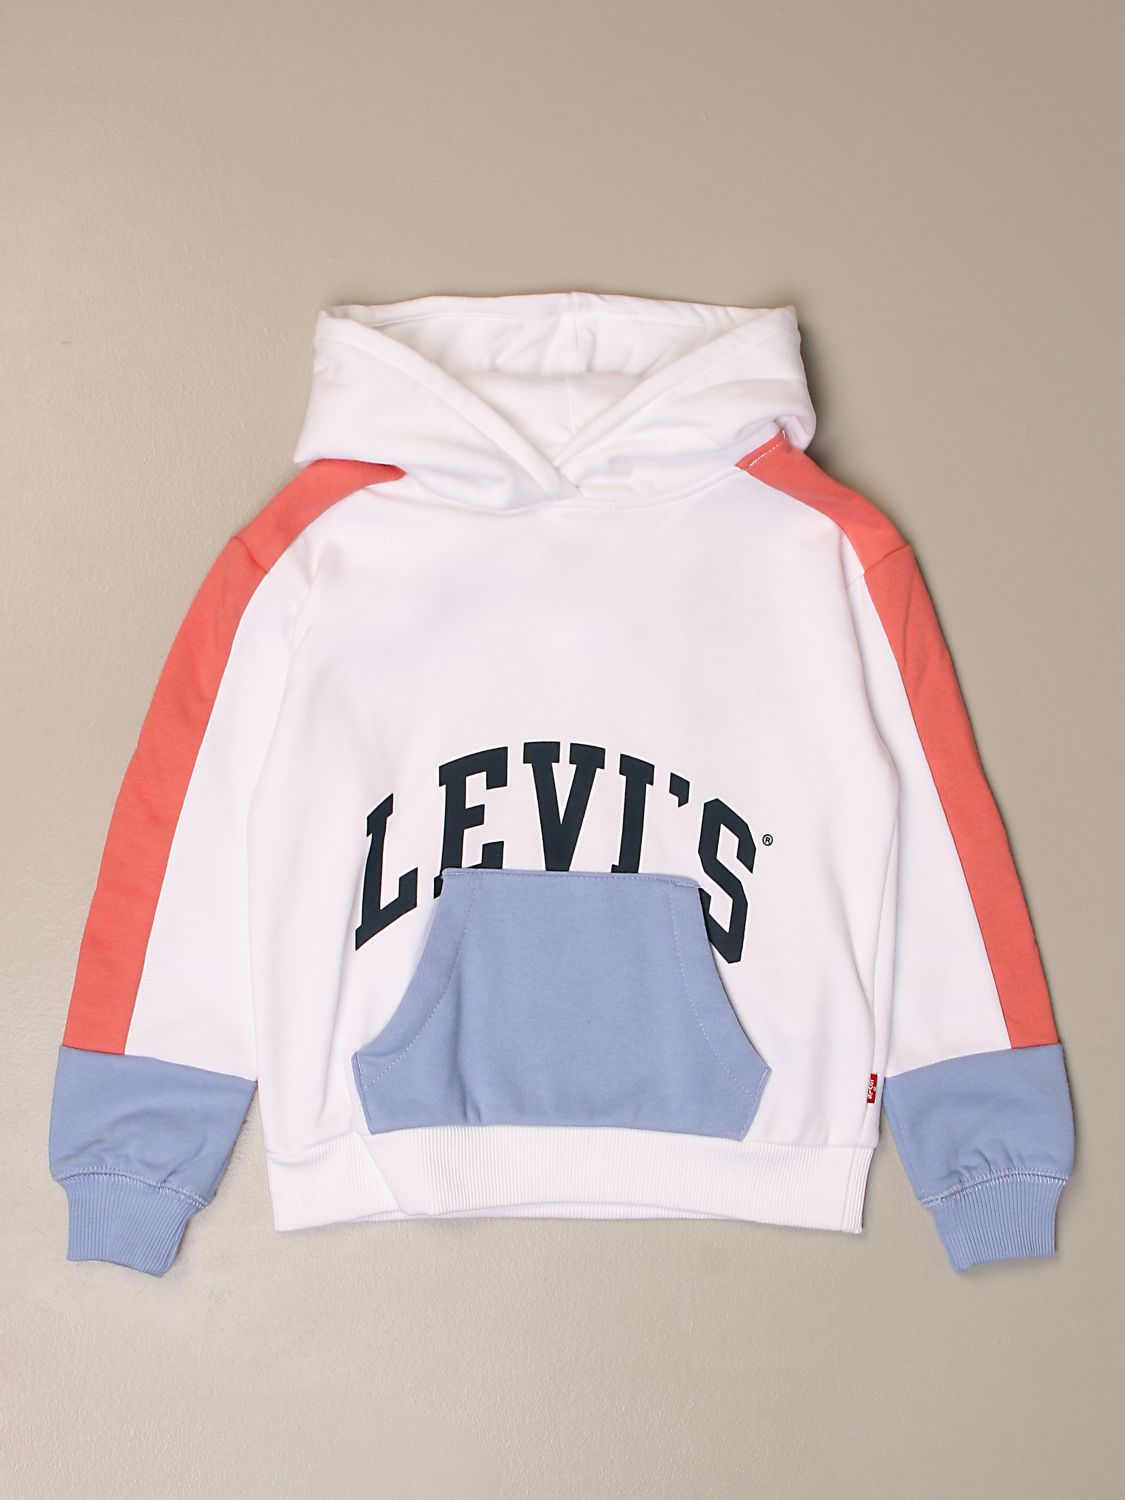 levis kids sweatshirt